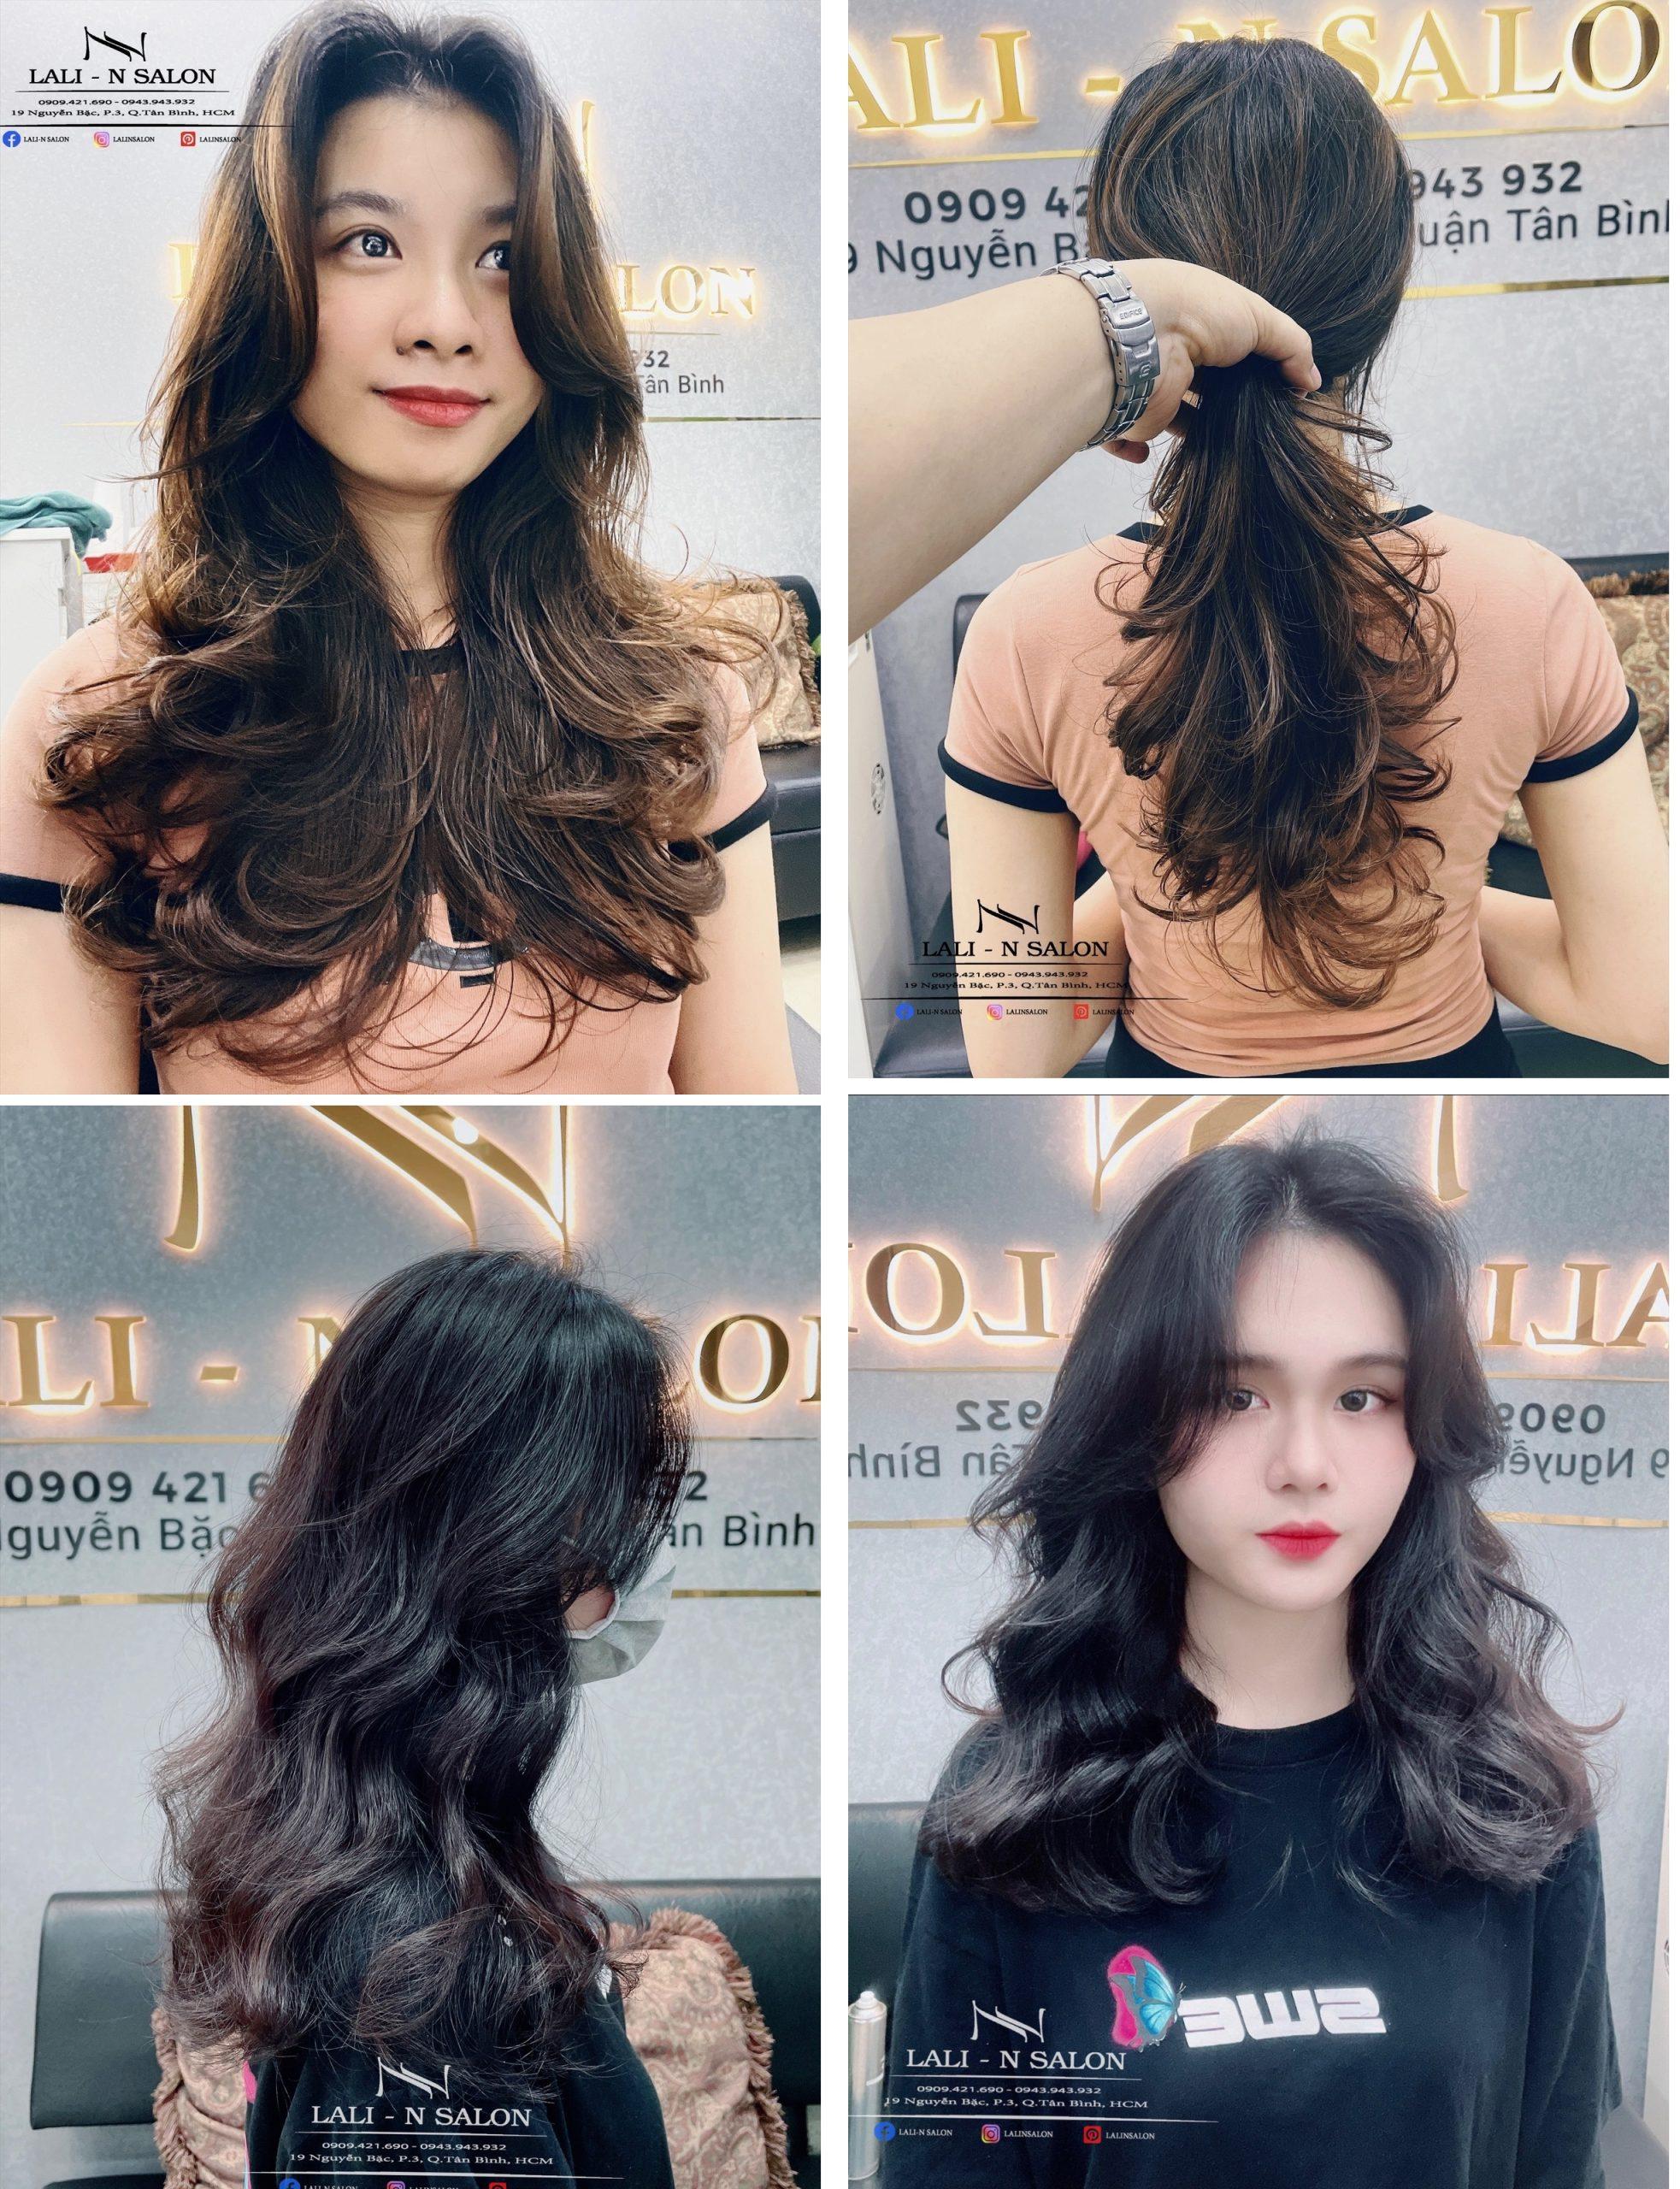 Salon uốn tóc Hàn Quốc là địa chỉ mà bạn có thể trải nghiệm những dịch vụ làm tóc chuyên nghiệp từ các chuyên gia tóc Hàn Quốc. Với các công nghệ làm tóc mới nhất, salon sẽ giúp bạn có một kiểu tóc đẹp như mơ. Hãy xem hình ảnh liên quan để khám phá thêm về salon uốn tóc Hàn Quốc.